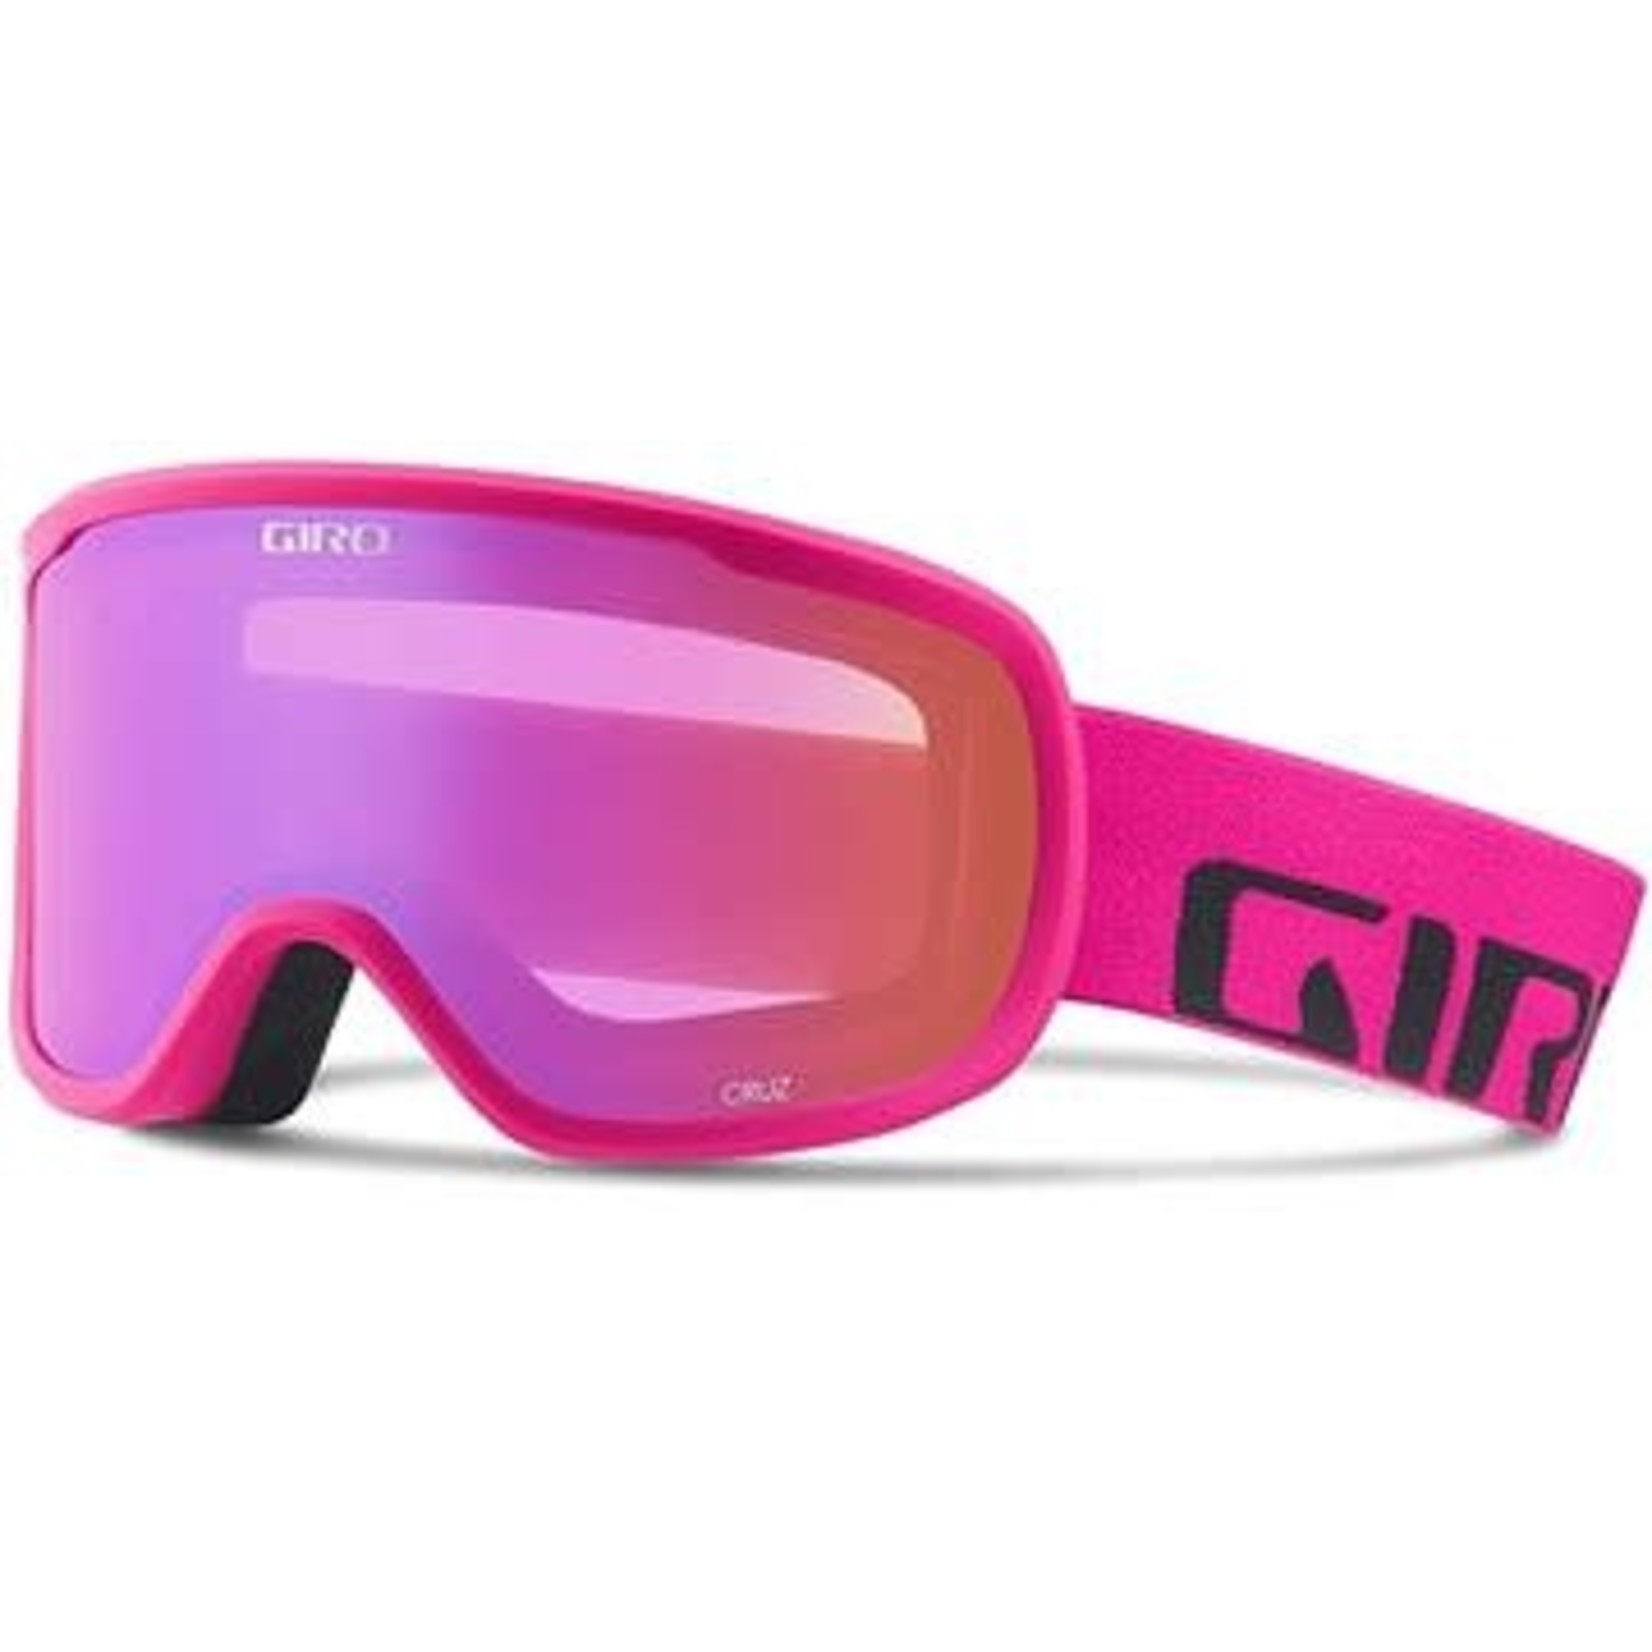 GIRO GIRO Cruz masque de ski adulte rose vif avec lentille rose ambre